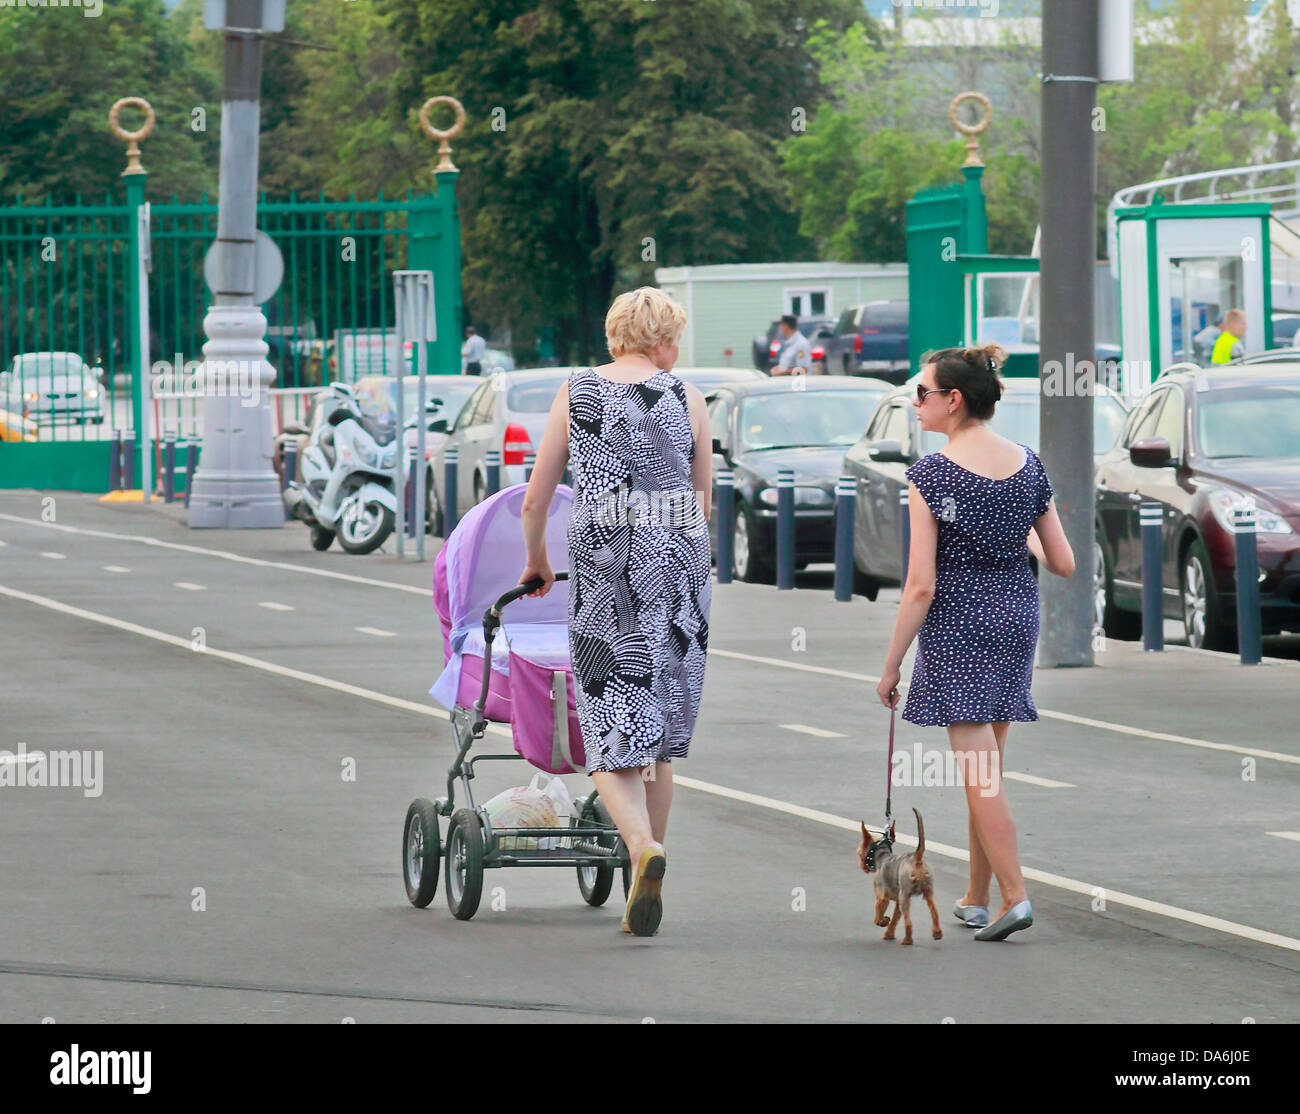 women are walking around the city Stock Photo